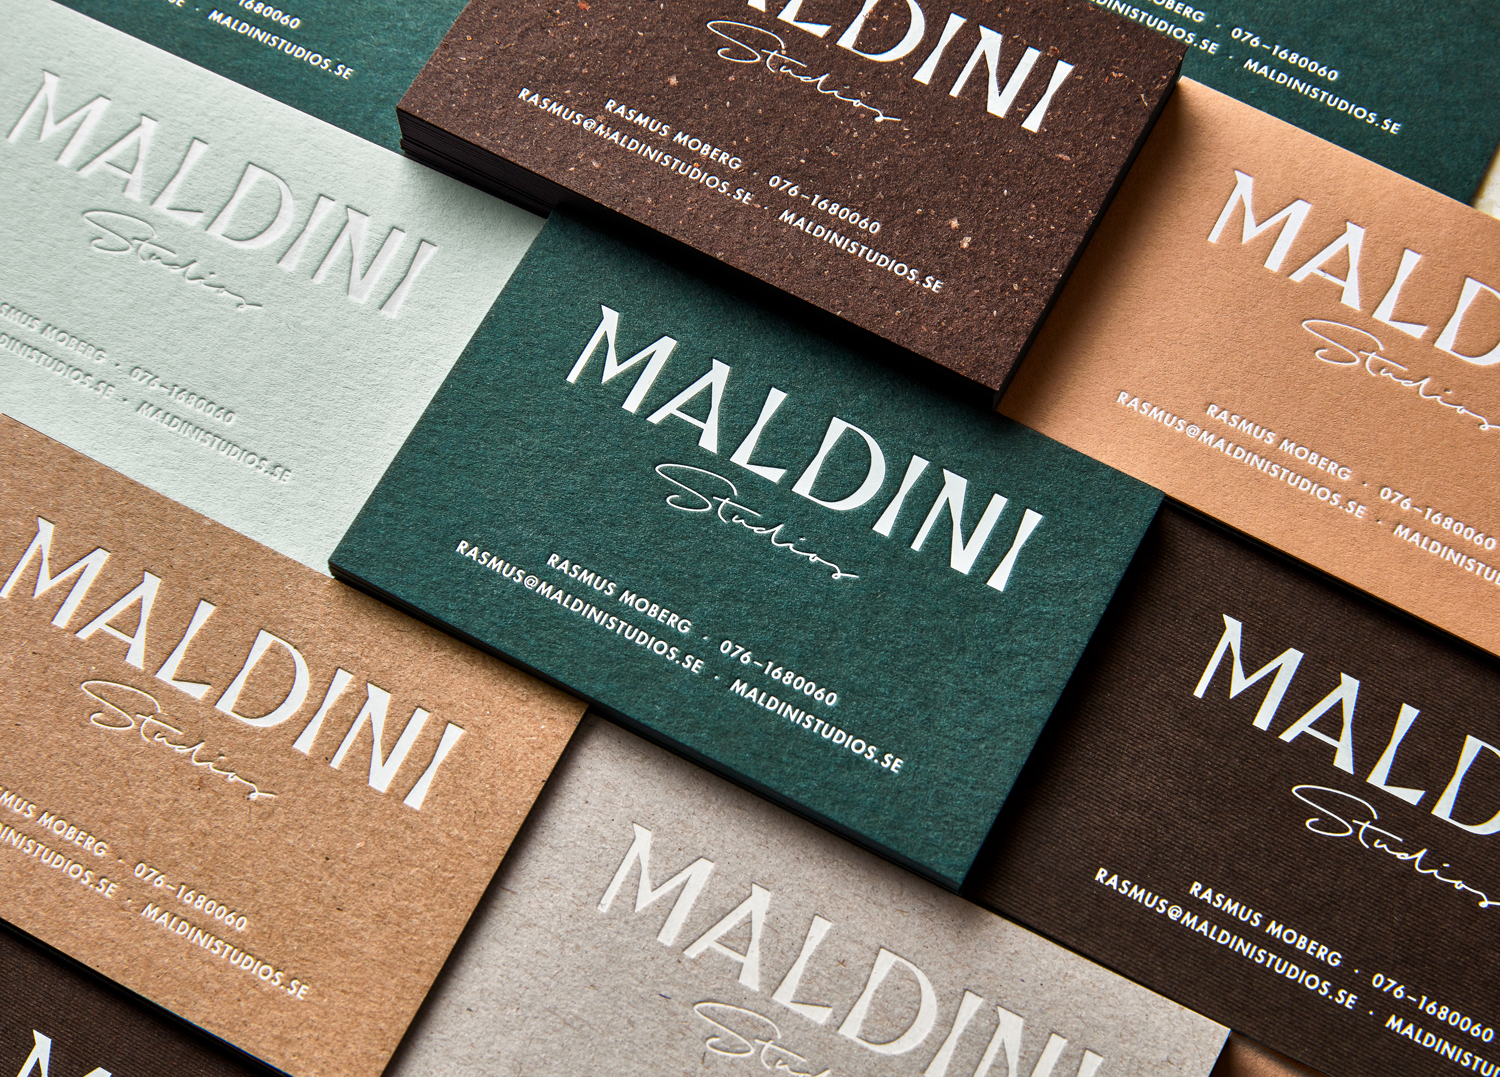 Scandinavian Branding – Maldini Studios by Jens Nilsson, Sweden